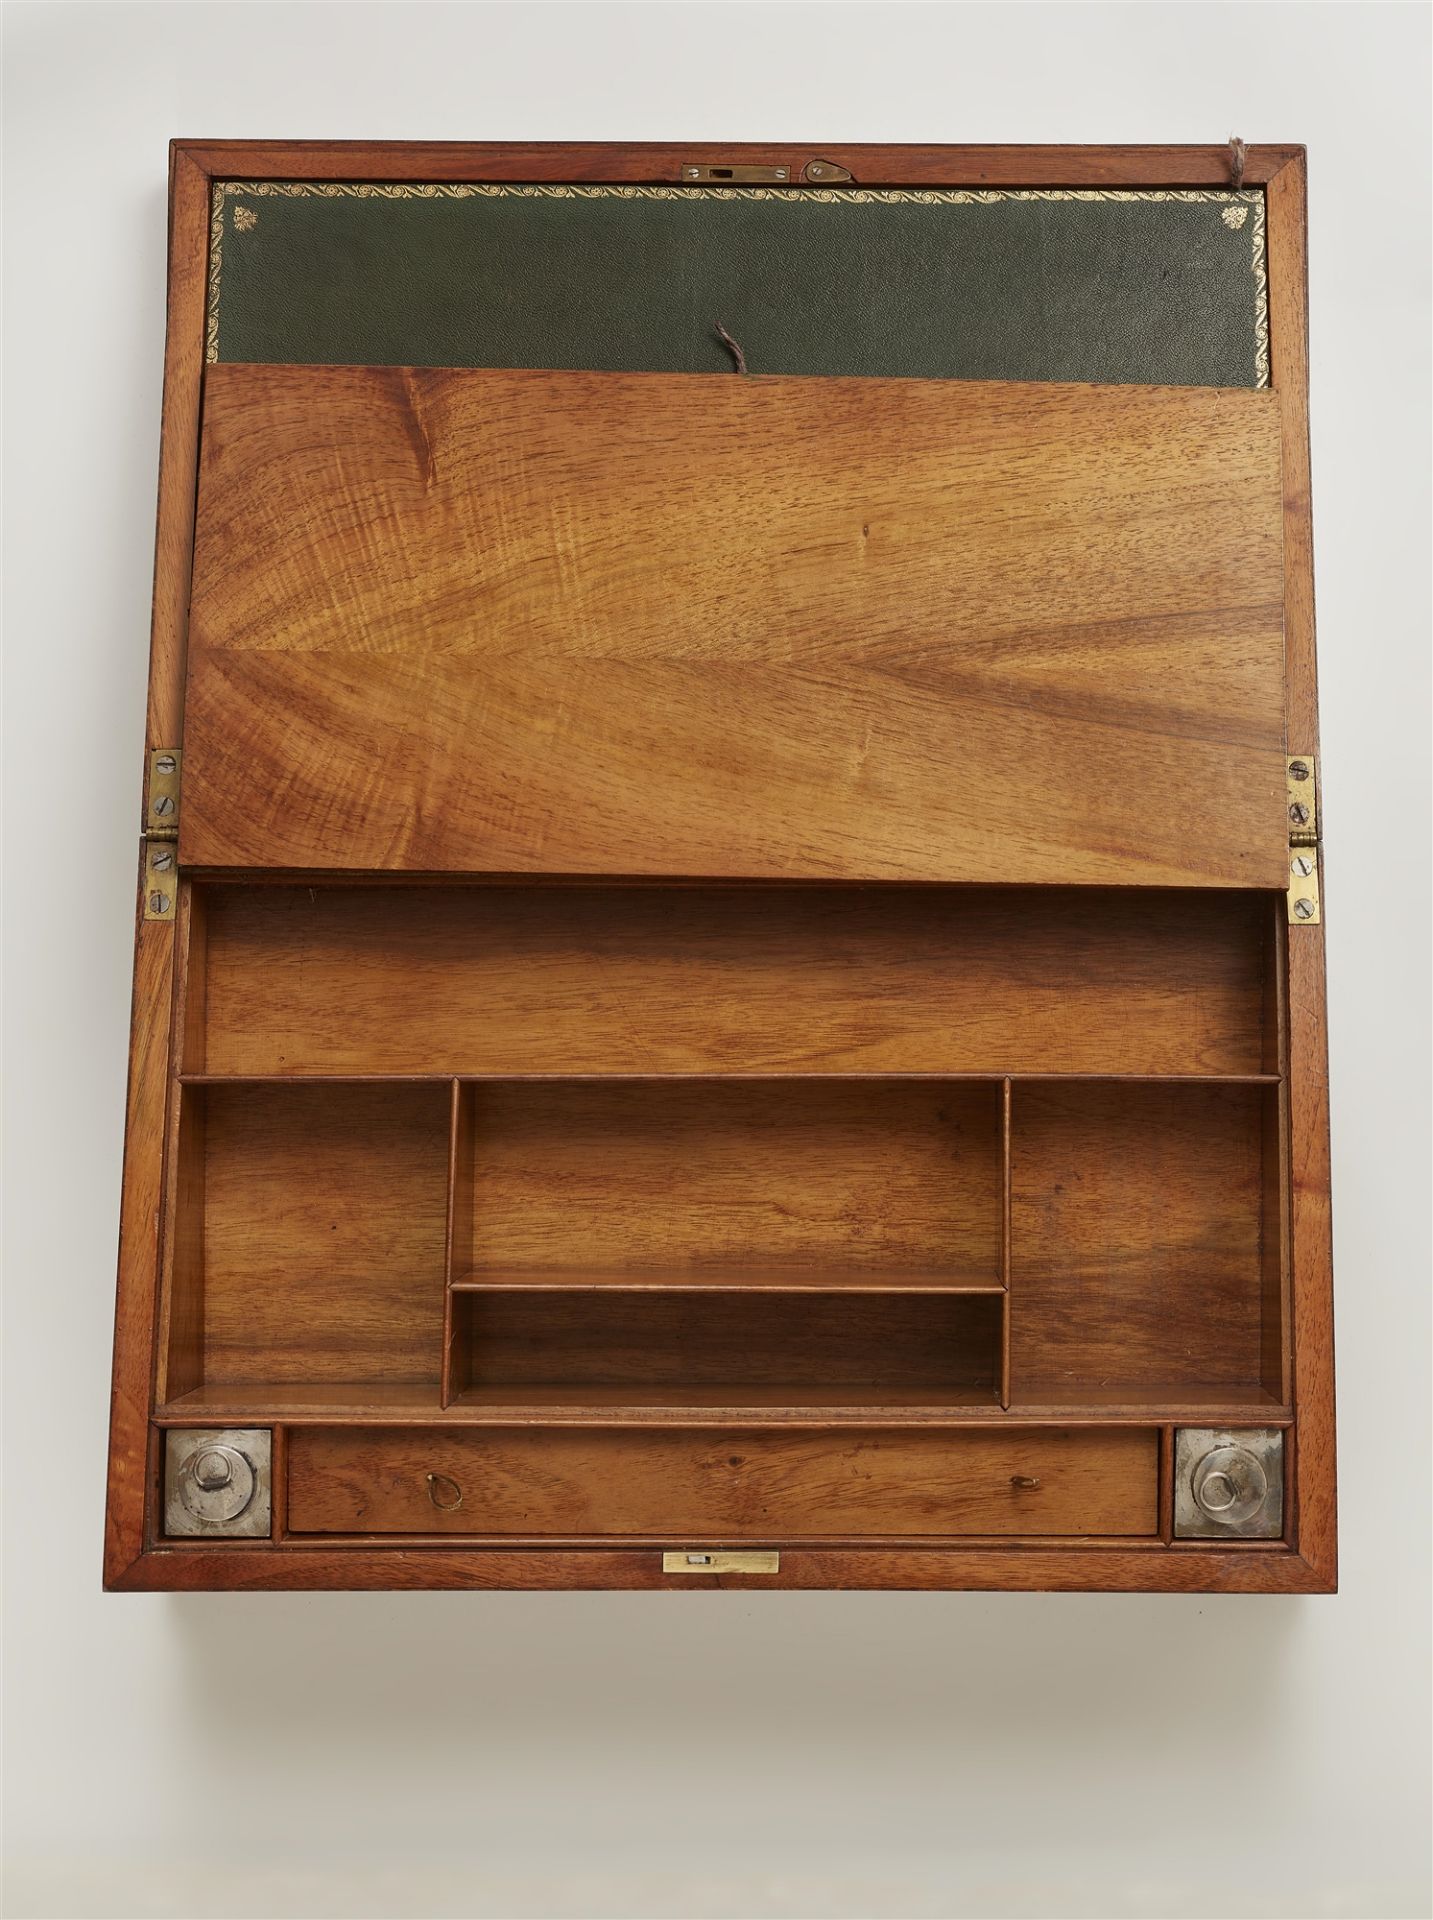 Multifunktionaler tragbarer Schreibkasten von David Roentgen - Bild 3 aus 4